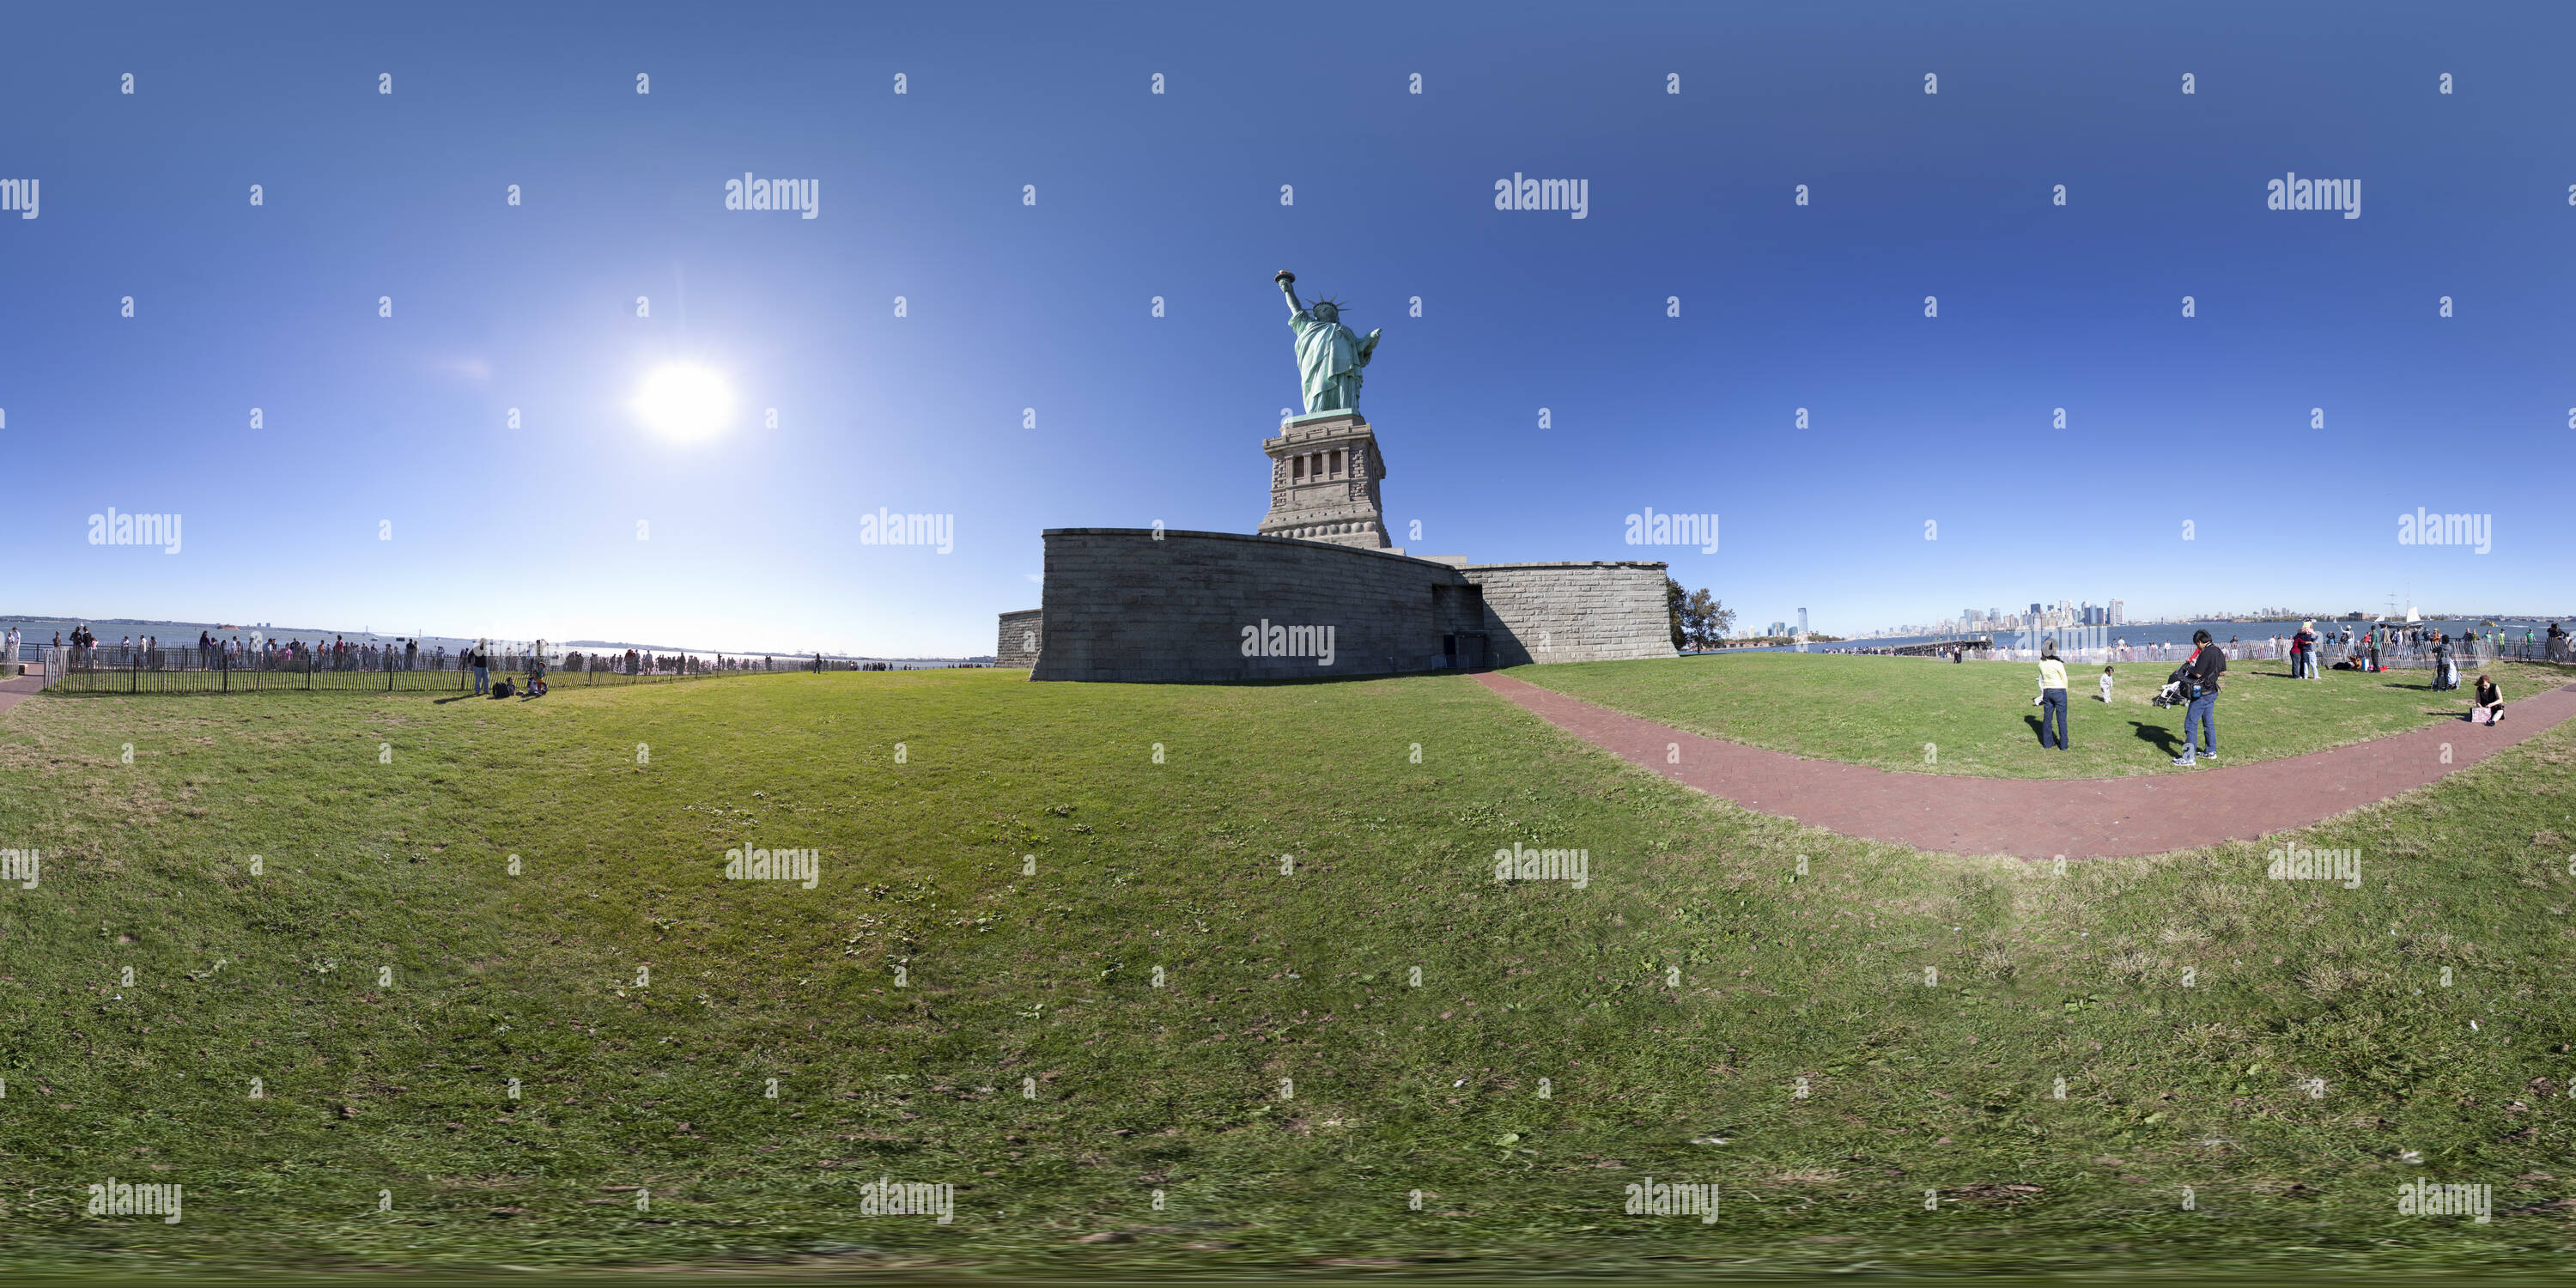 Vue panoramique à 360° de Statue de la Liberté